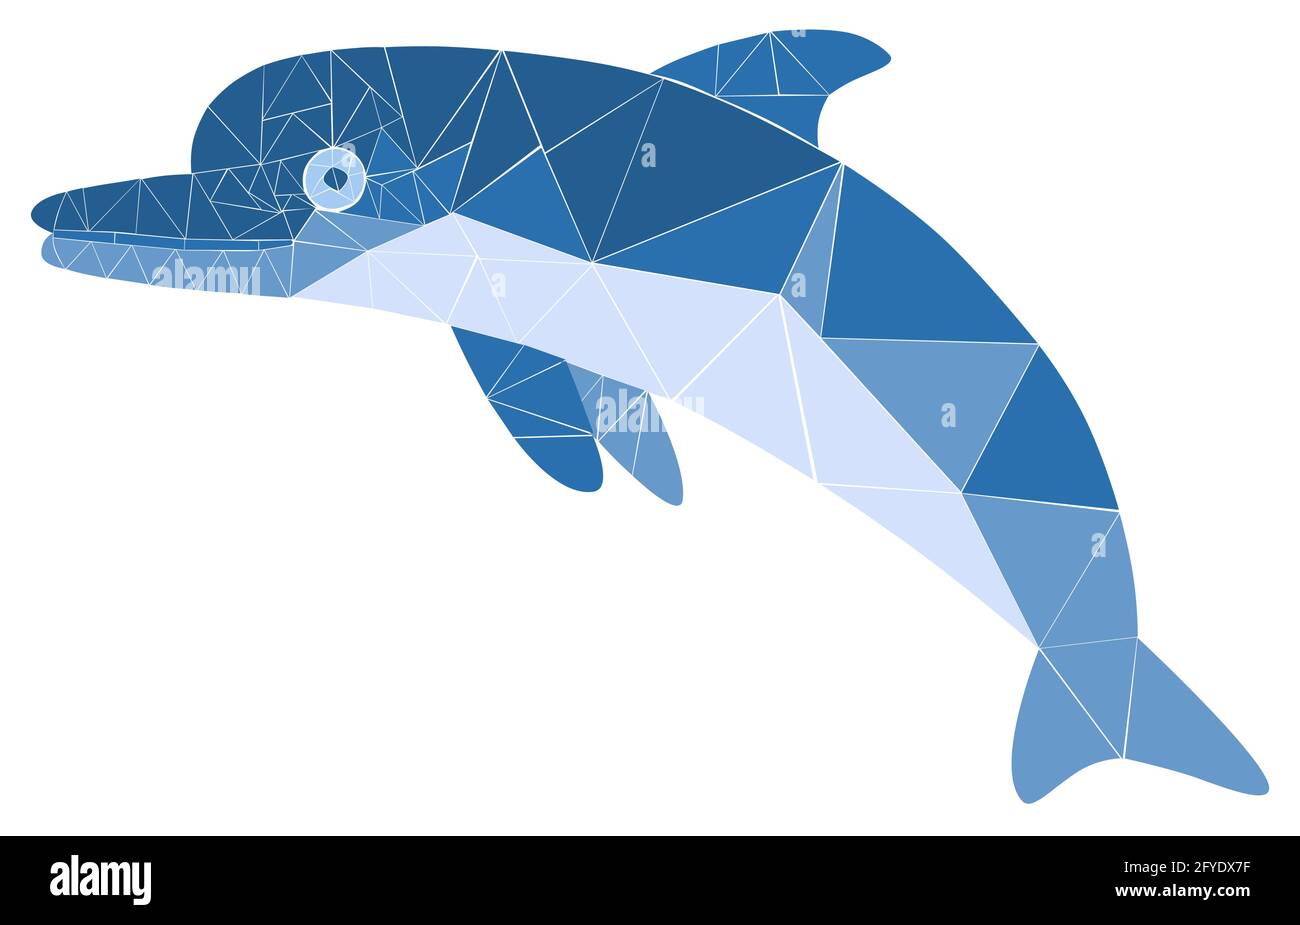 Mosaikblauer Delphin. Monochrome Vektorgrafik für Design isoliert auf weißem Hintergrund Stock Vektor